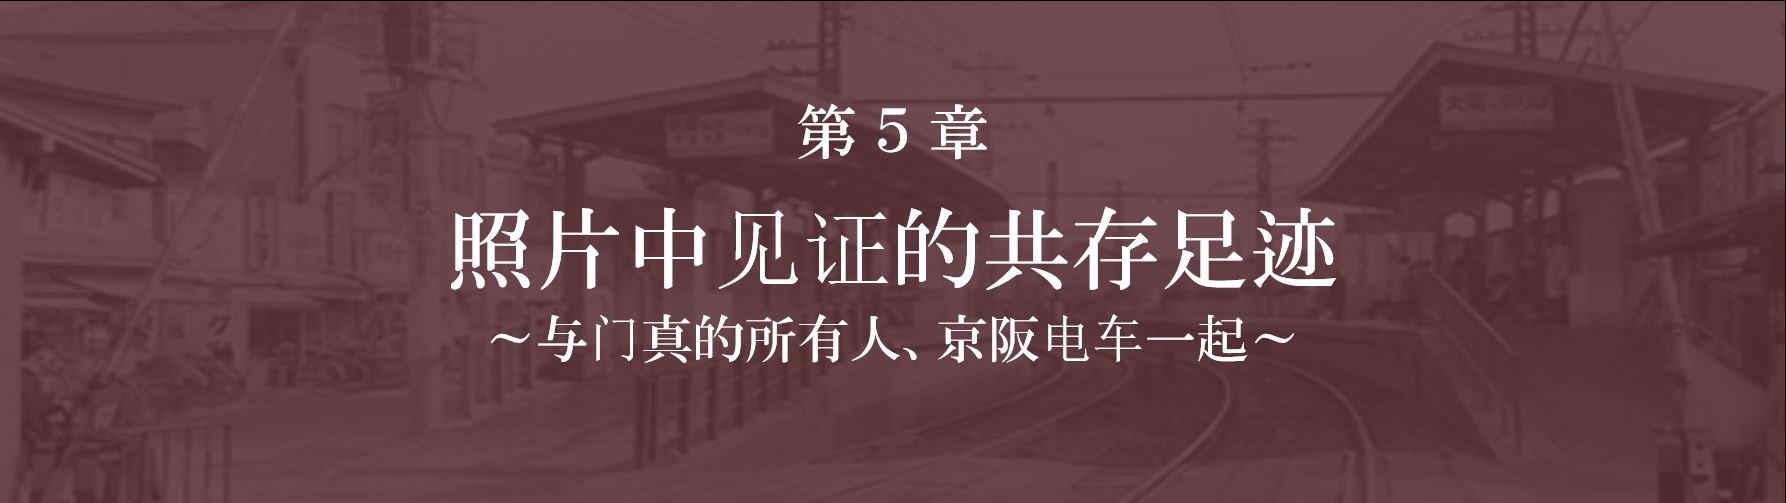 第5章 照片中见证的共存足迹—与门真的所有人、京阪电车一起—